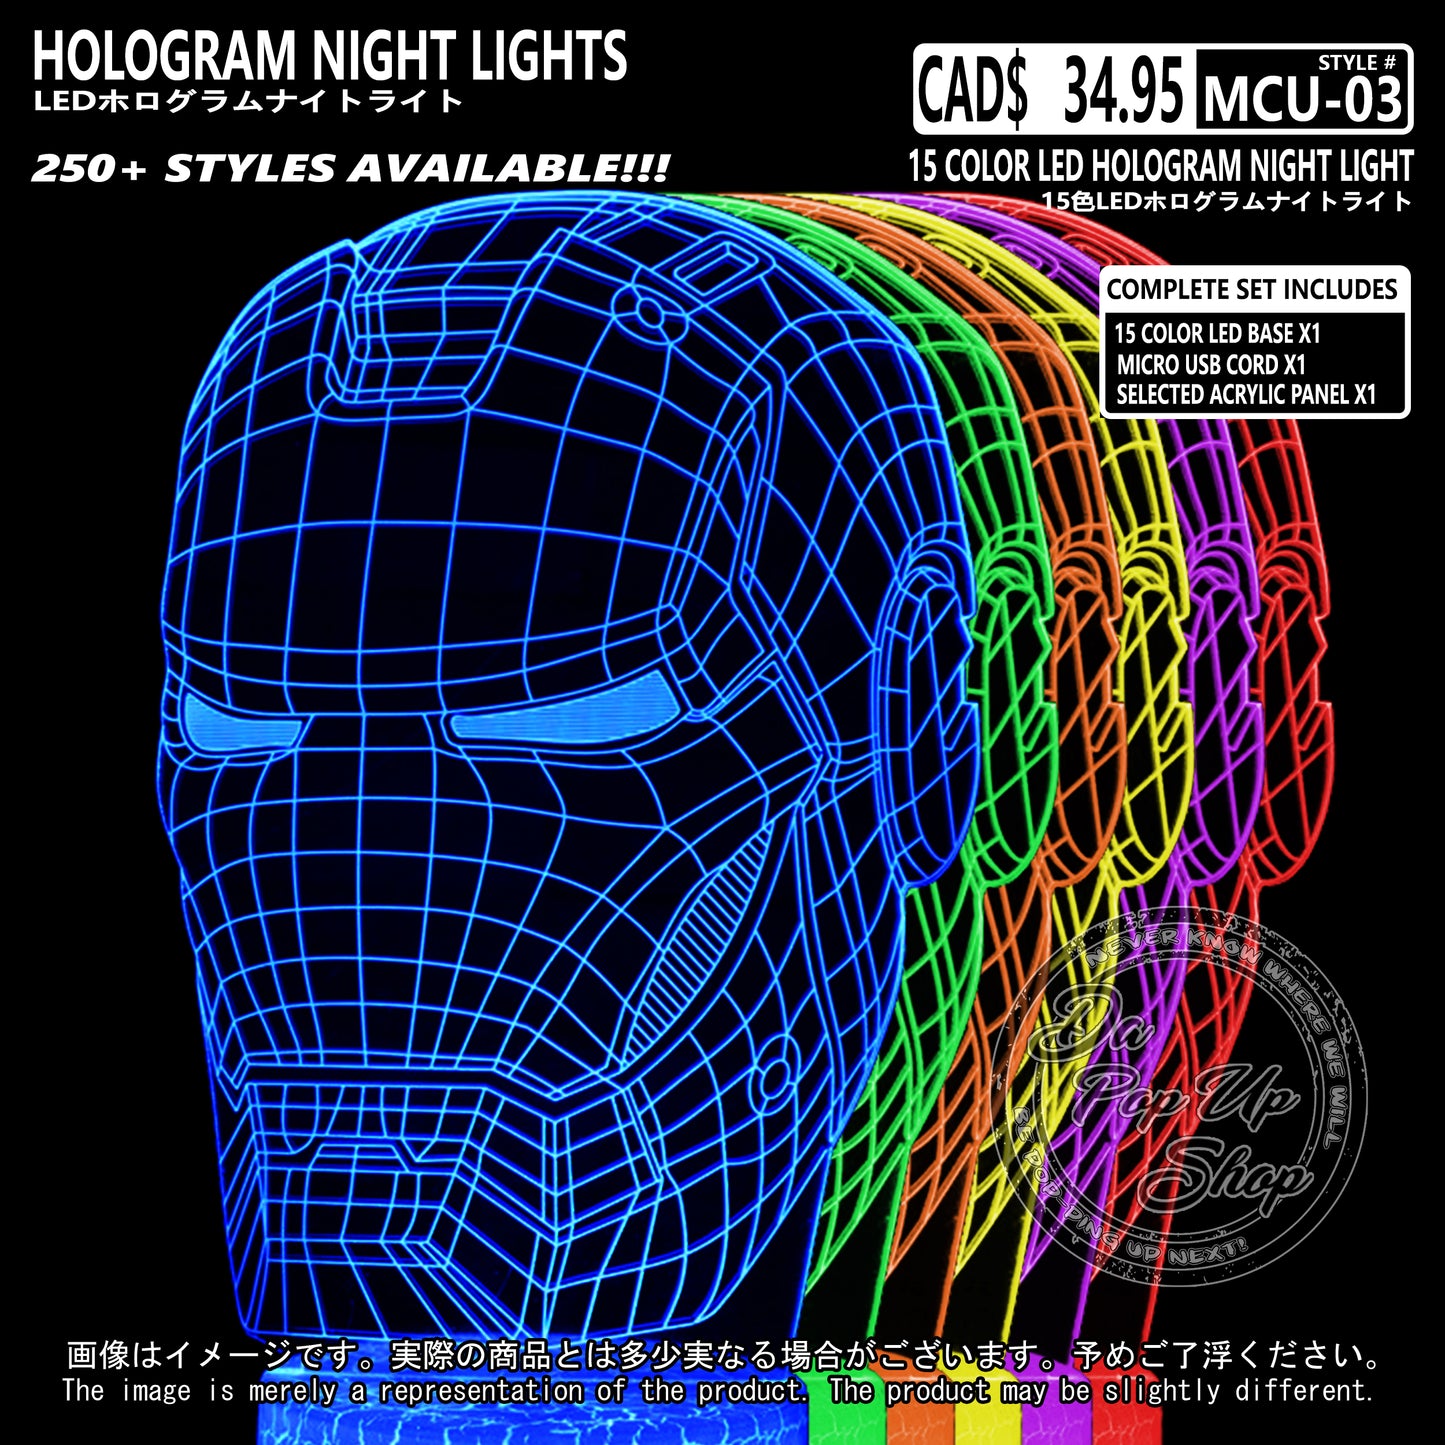 (MCU-03) MCU Marvel Cinematic Universal Hologram LED Night Light